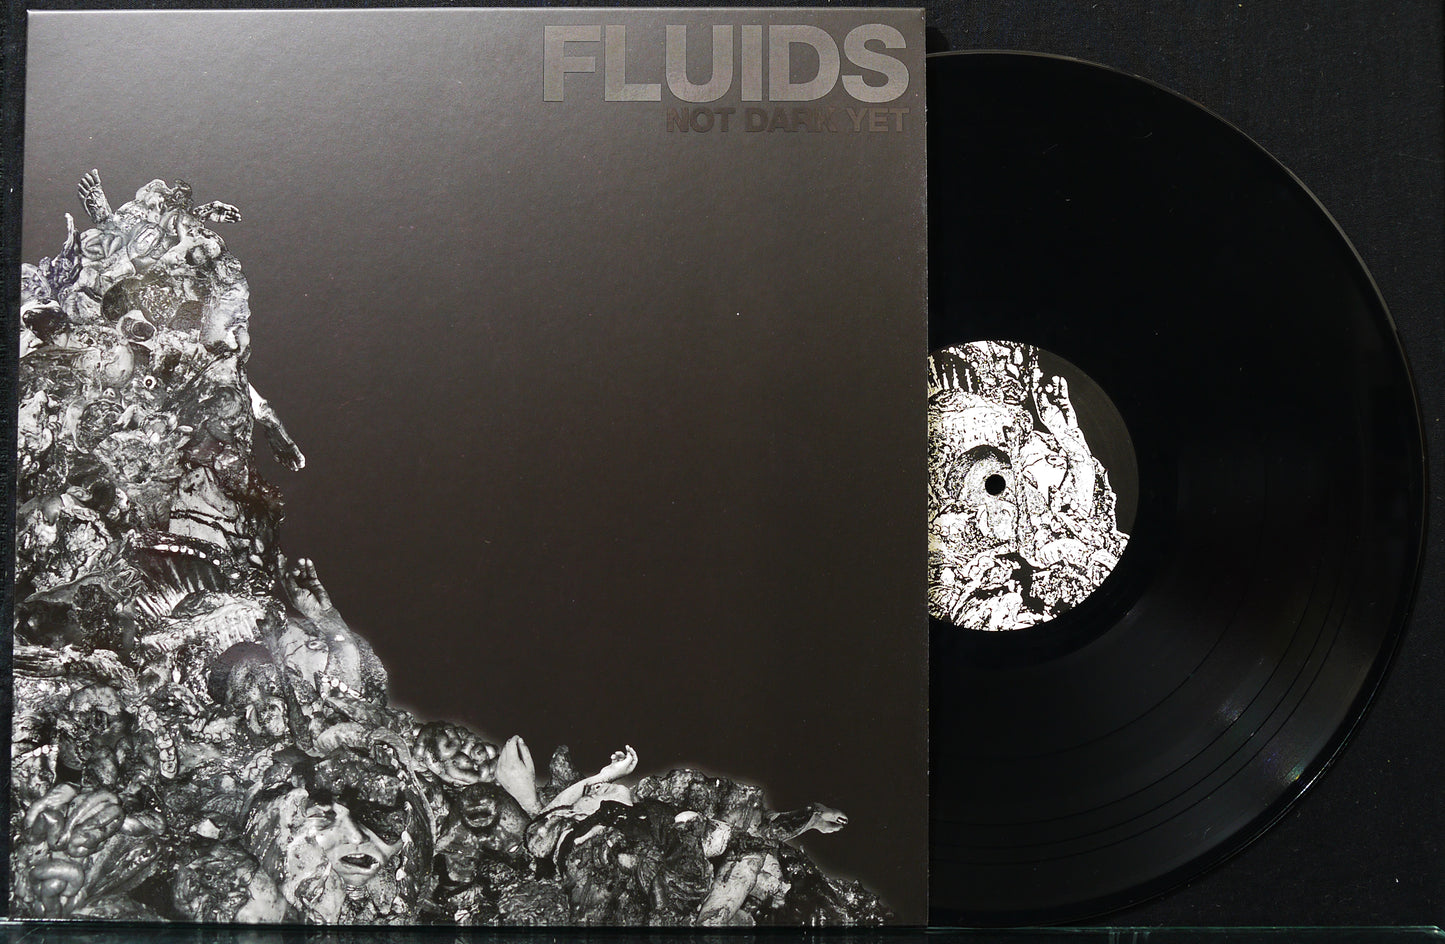 FLUIDS - Not Dark Yet 12"